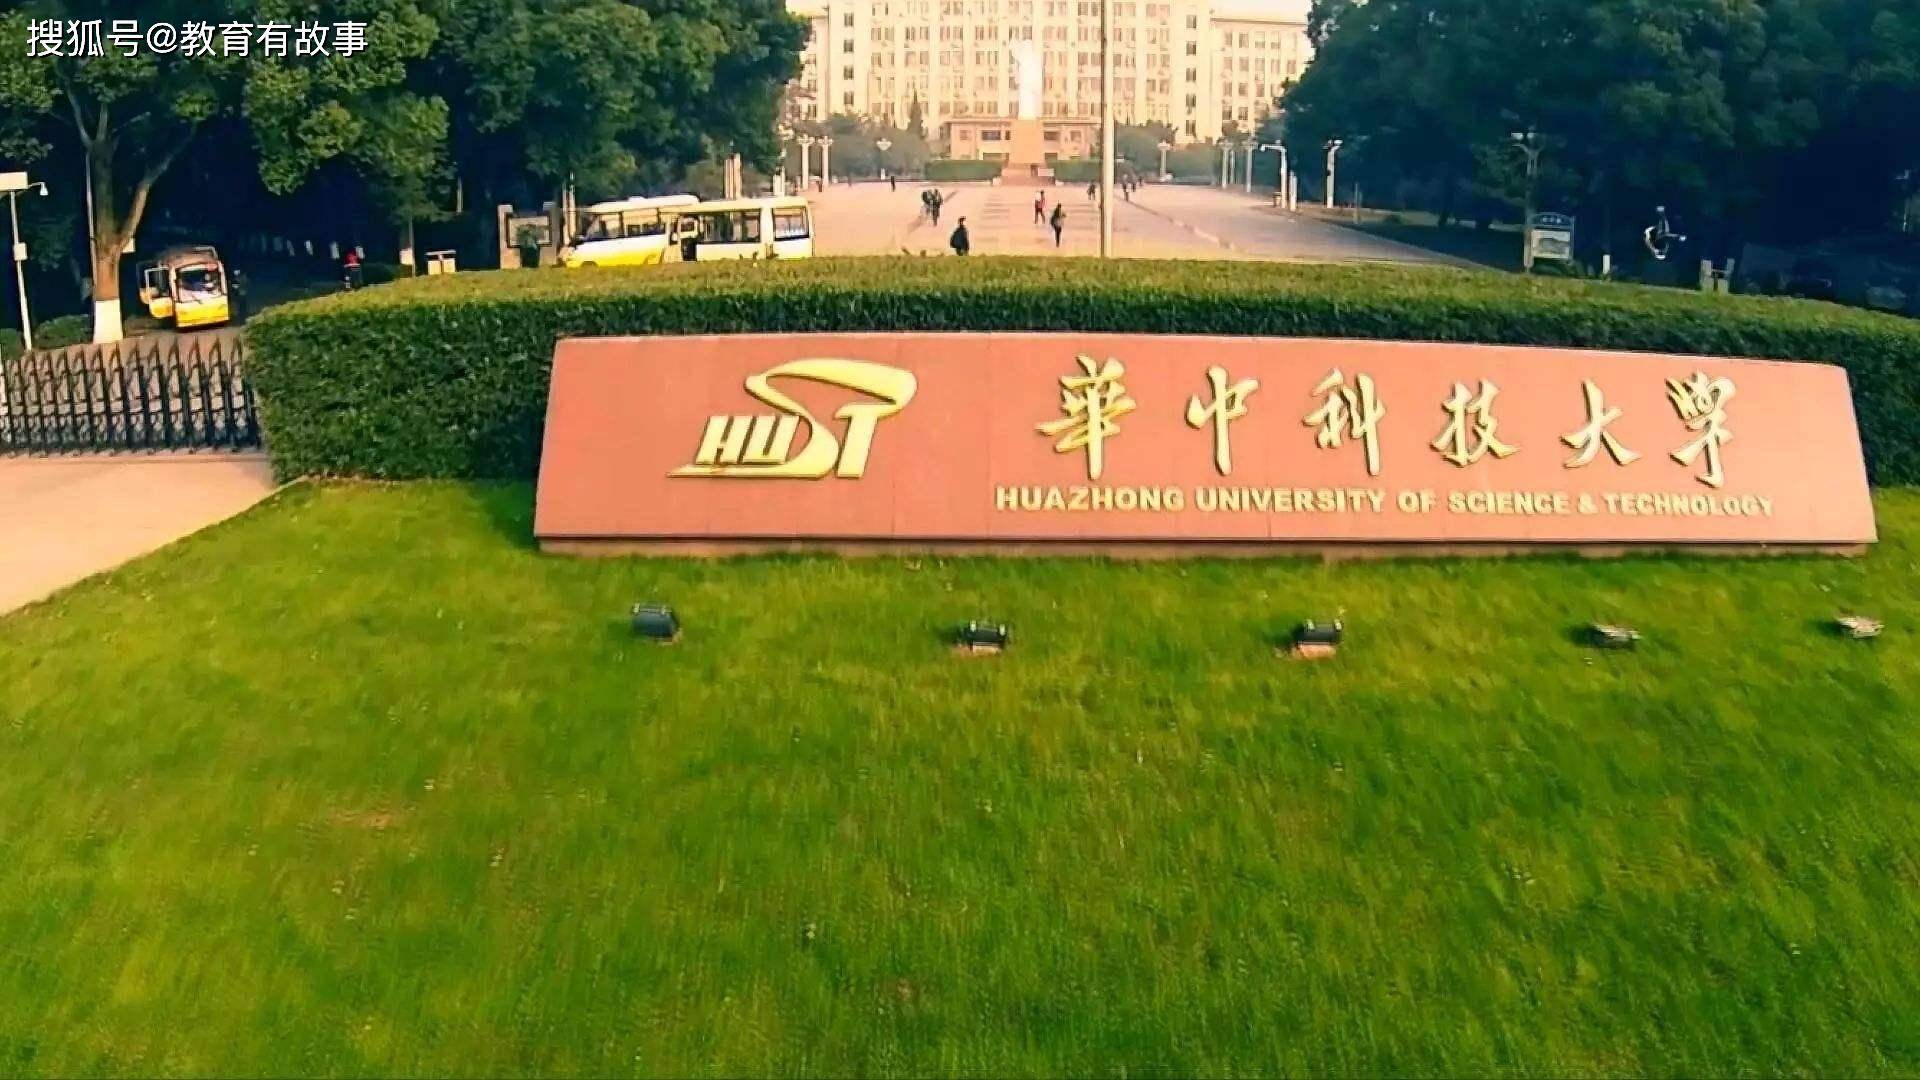 华中科技大学和武汉大学是武汉市一对"双子星"明星院